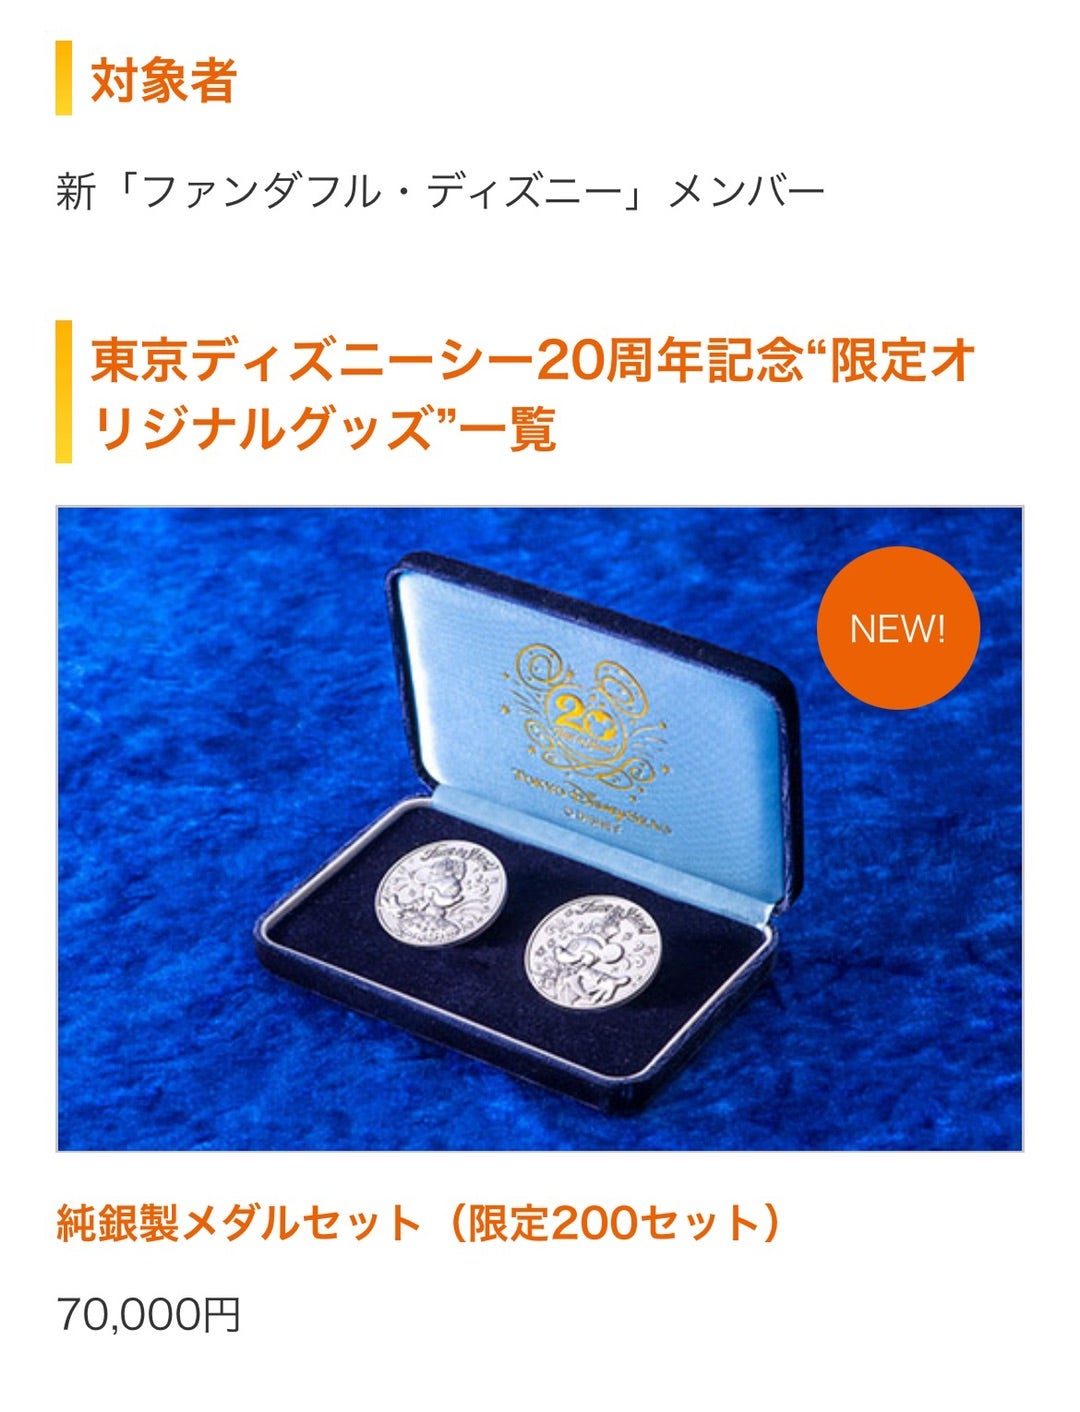 東京ディズニーシー20周年記念純銀製メダルセット-